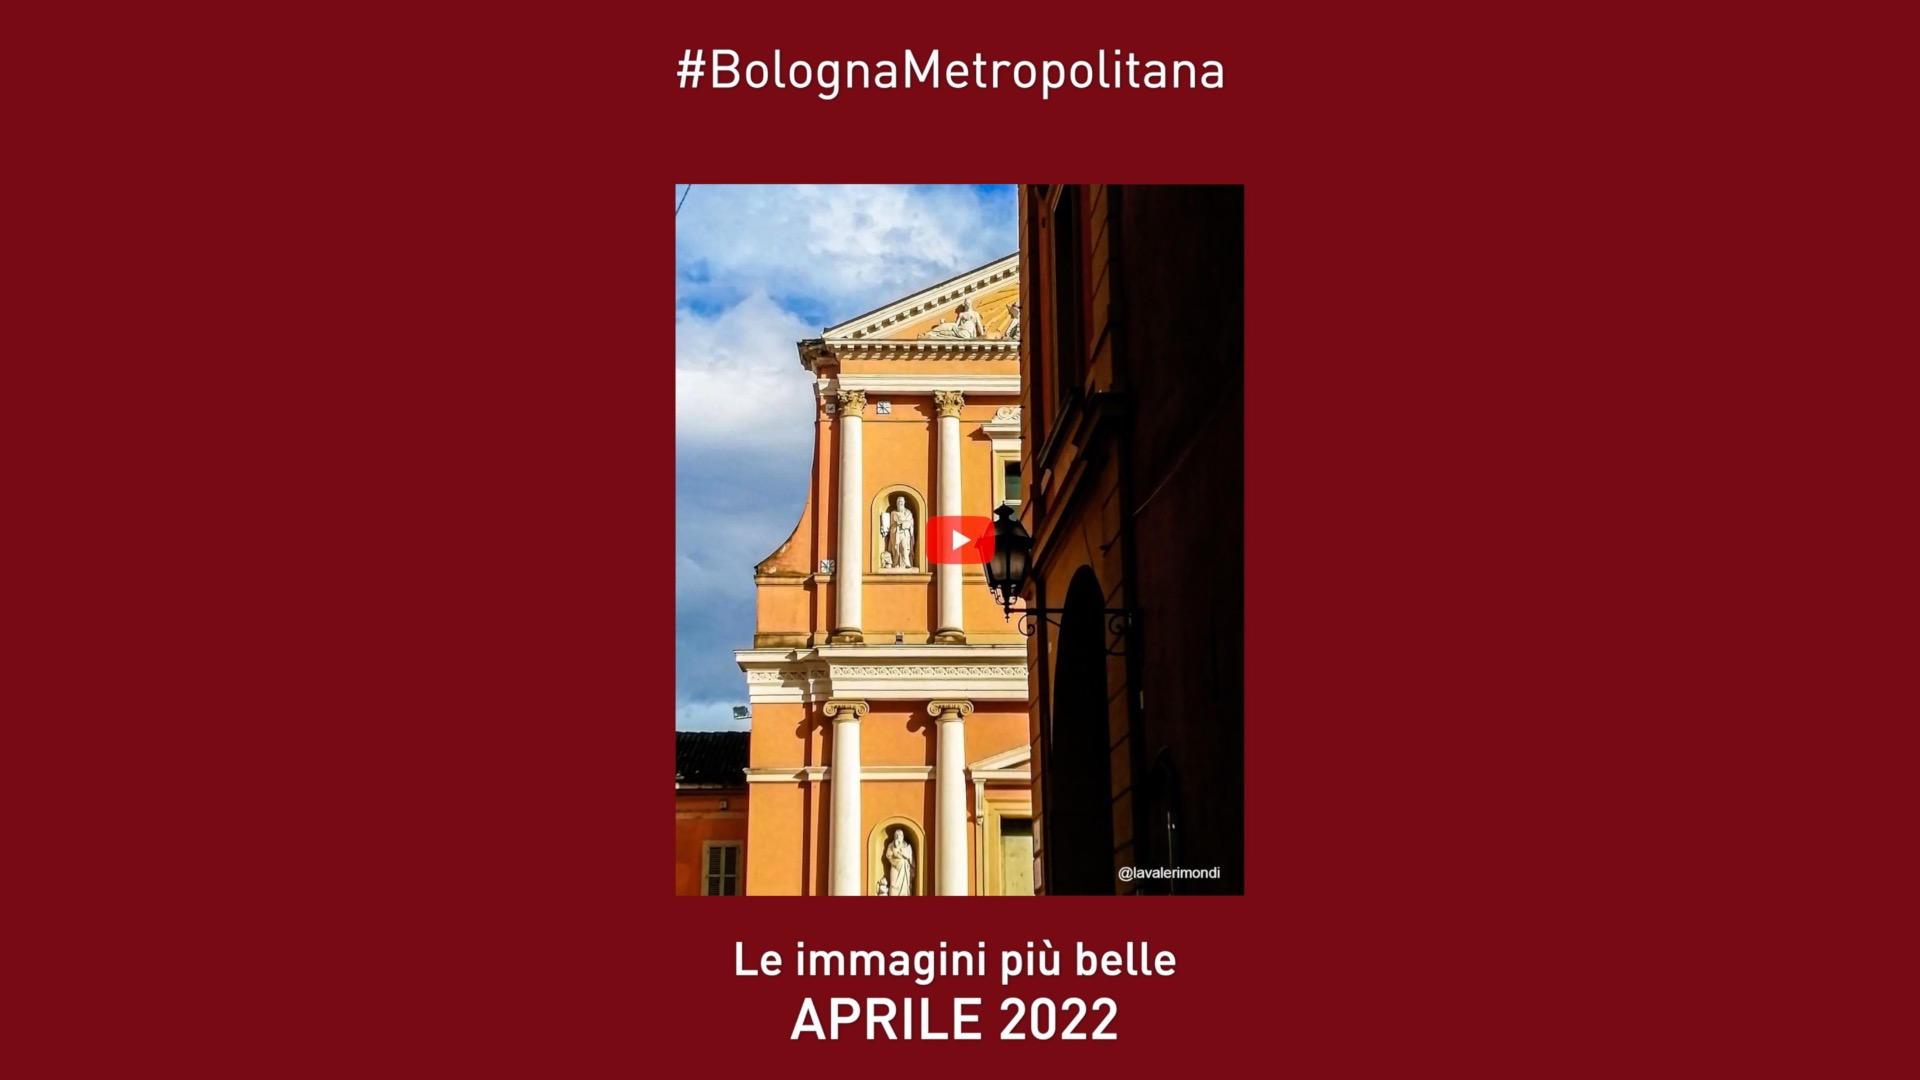 #BolognaMetropolitana - Le immagini più belle di aprile 2022